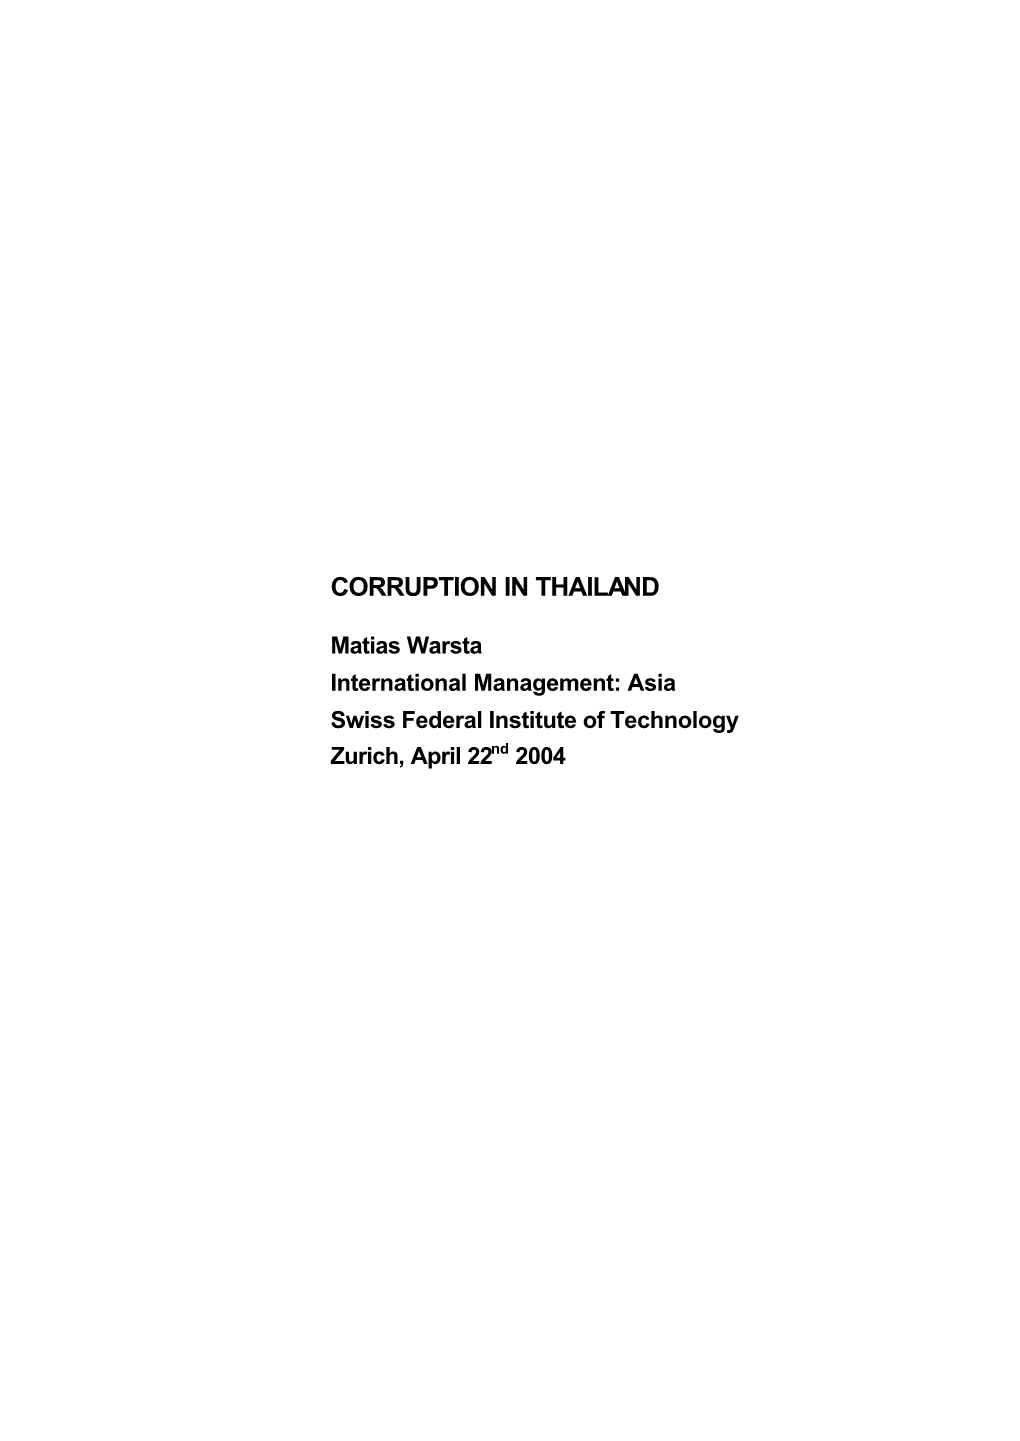 Corruption in Thailand